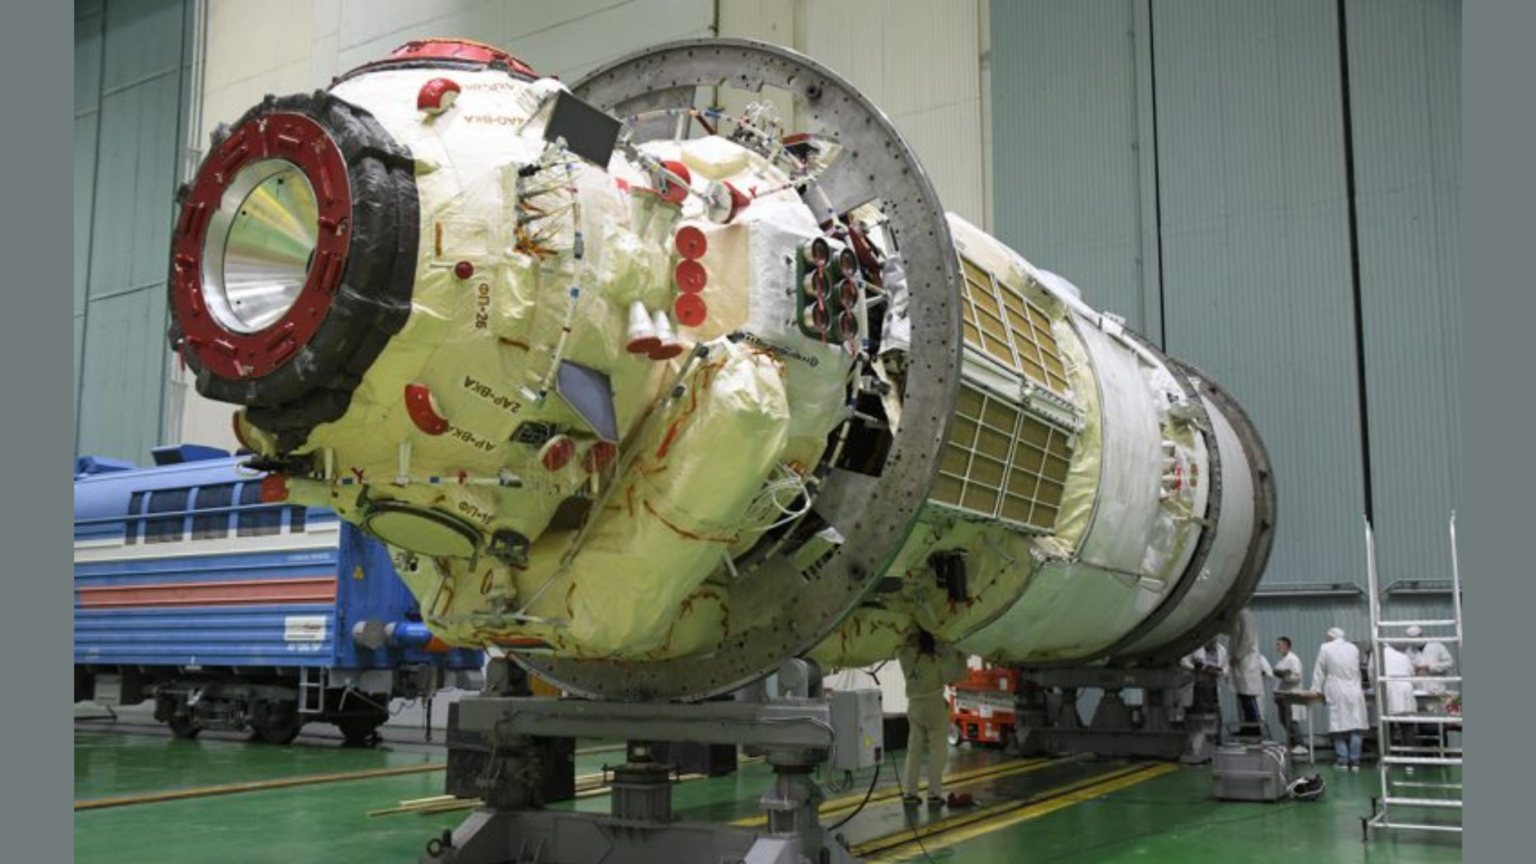 Nauka module before launch